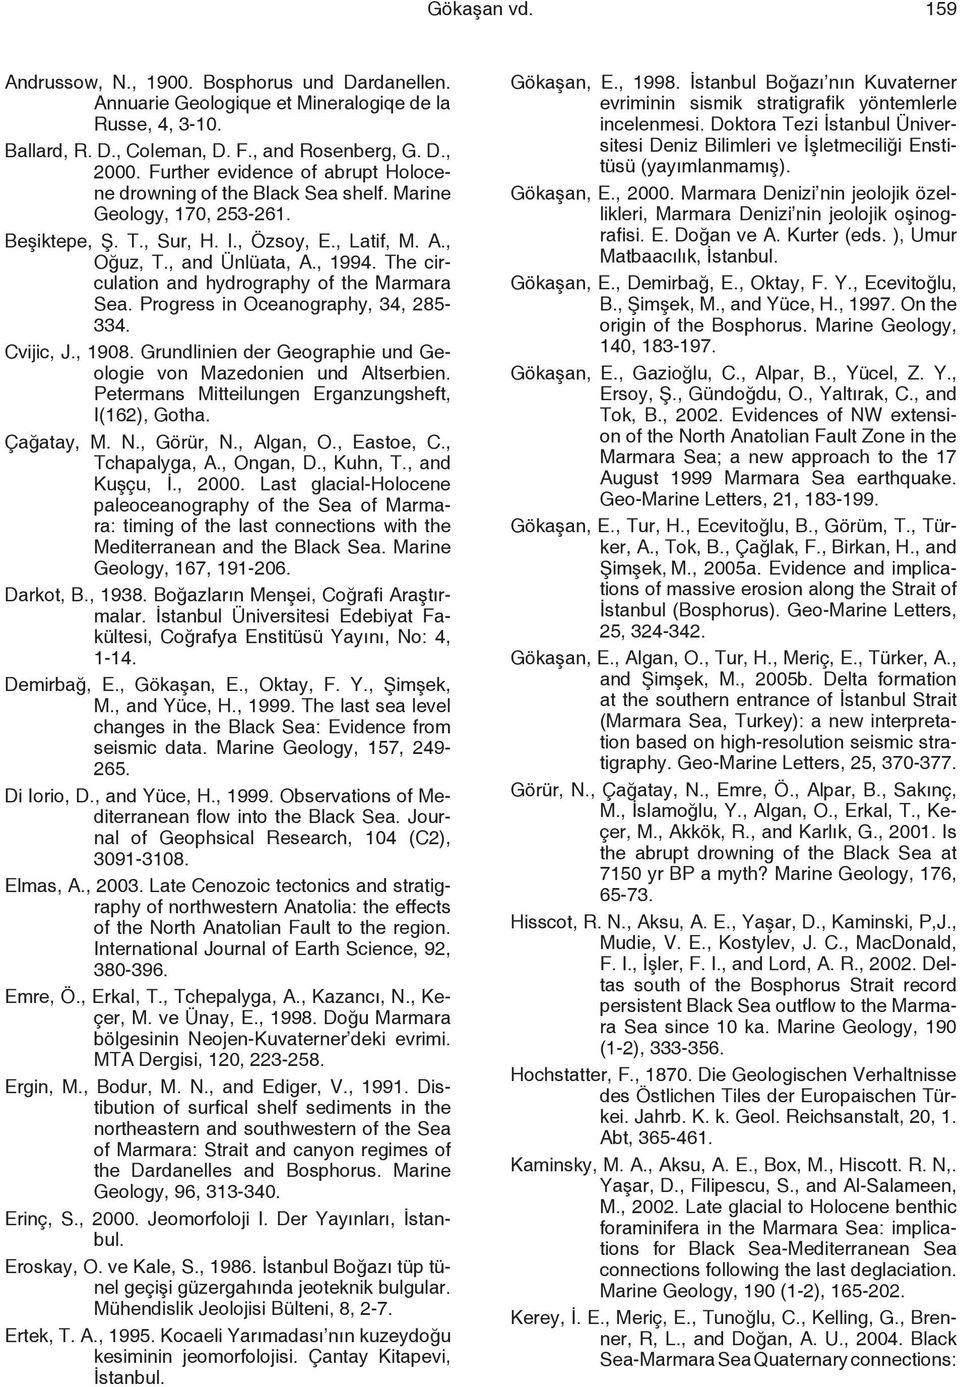 The circulation and hydrography of the Marmara Sea. Progress in Oceanography, 34, 285-334. Cvijic, J., 1908. Grundlinien der Geographie und Geologie von Mazedonien und Altserbien.